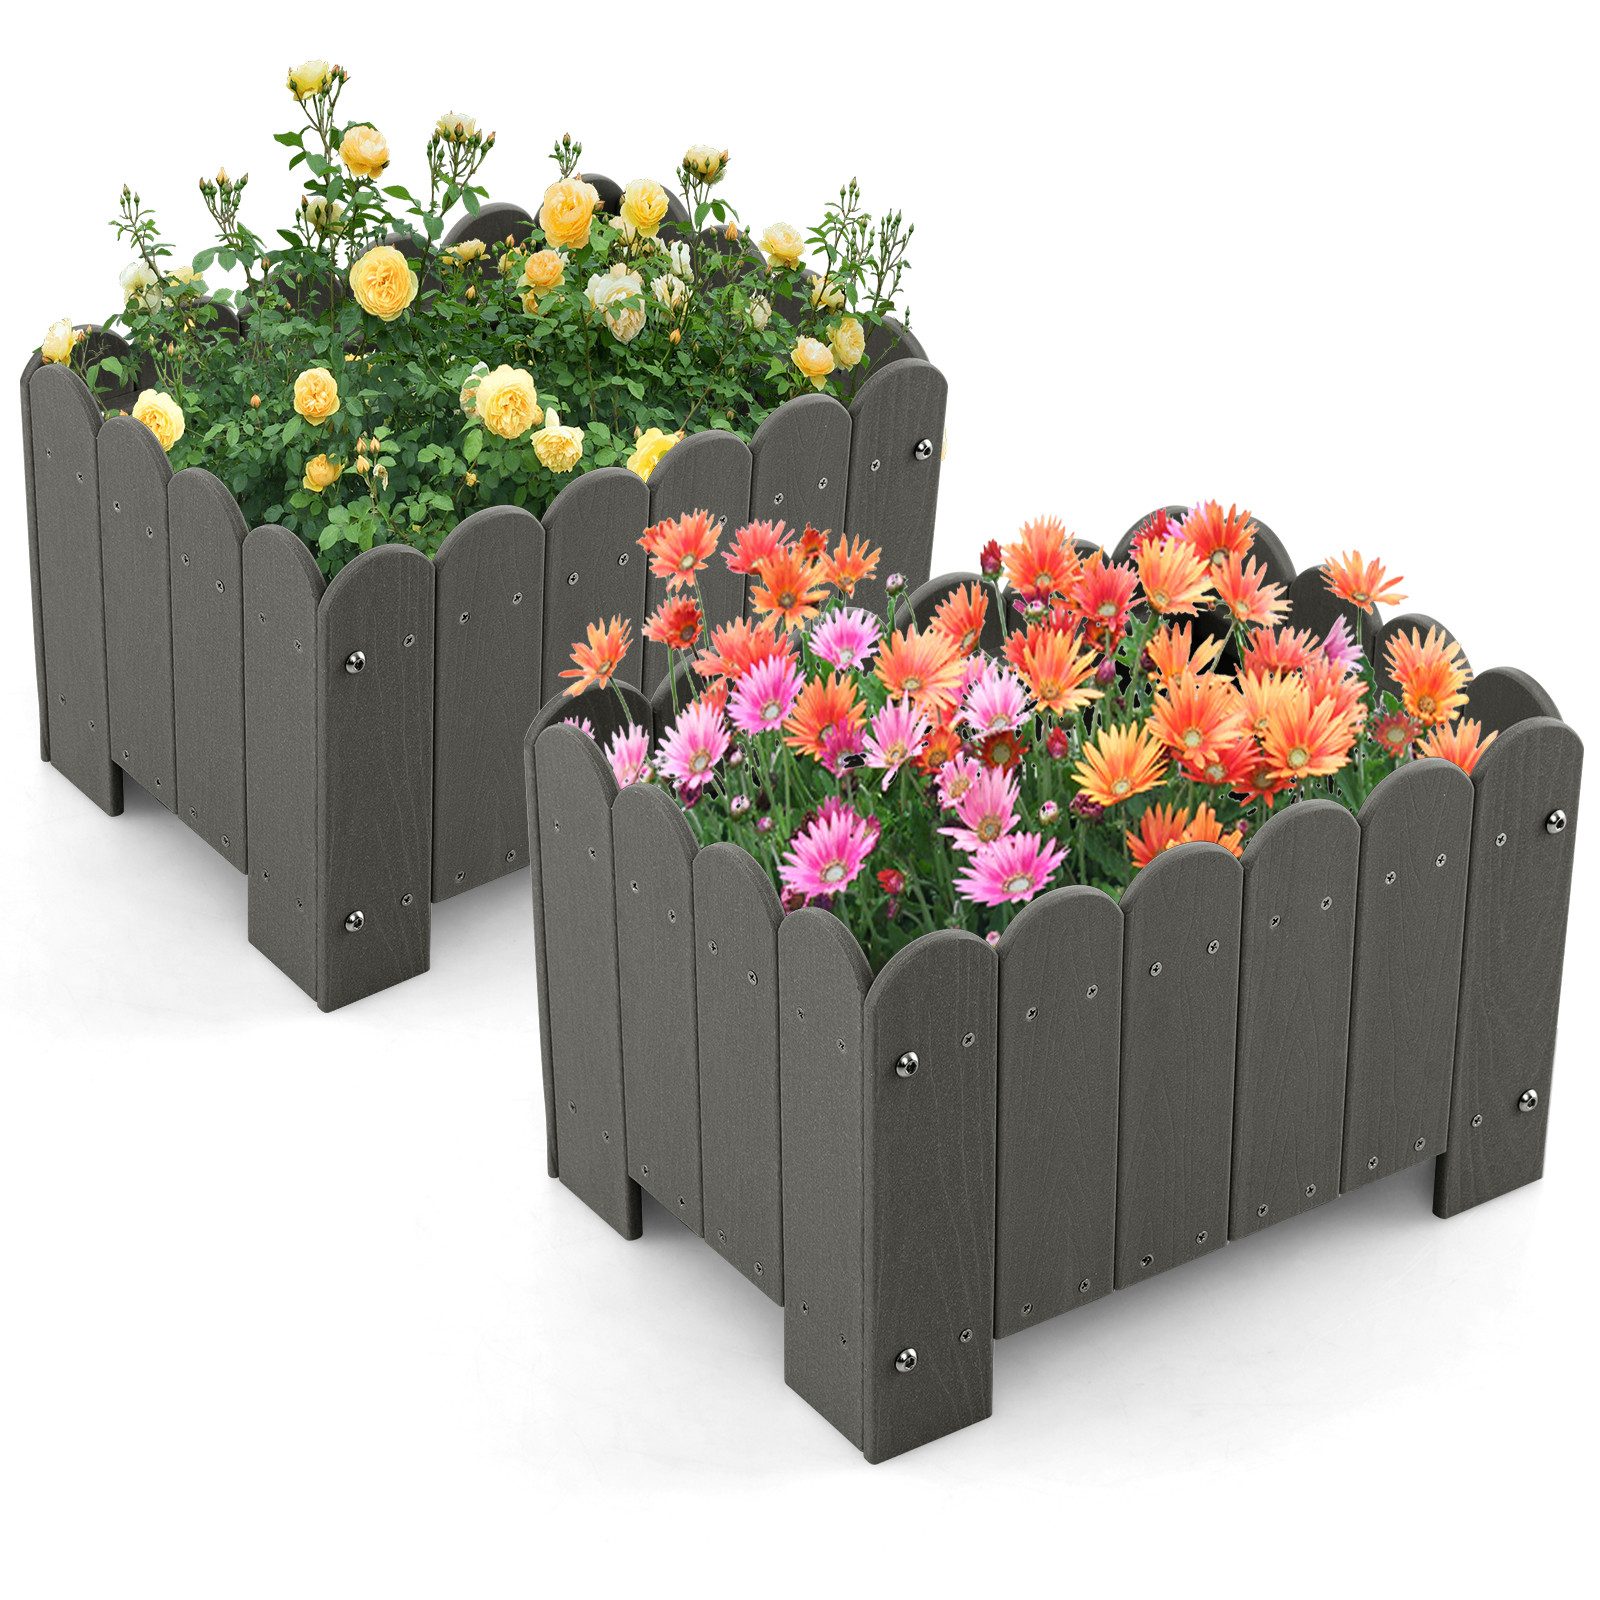 KOMFOTTEU Blumenkasten (2er Set), Pflanzkübel aus HDPE wetterfest für Gemüse, Blumen, Kräuter